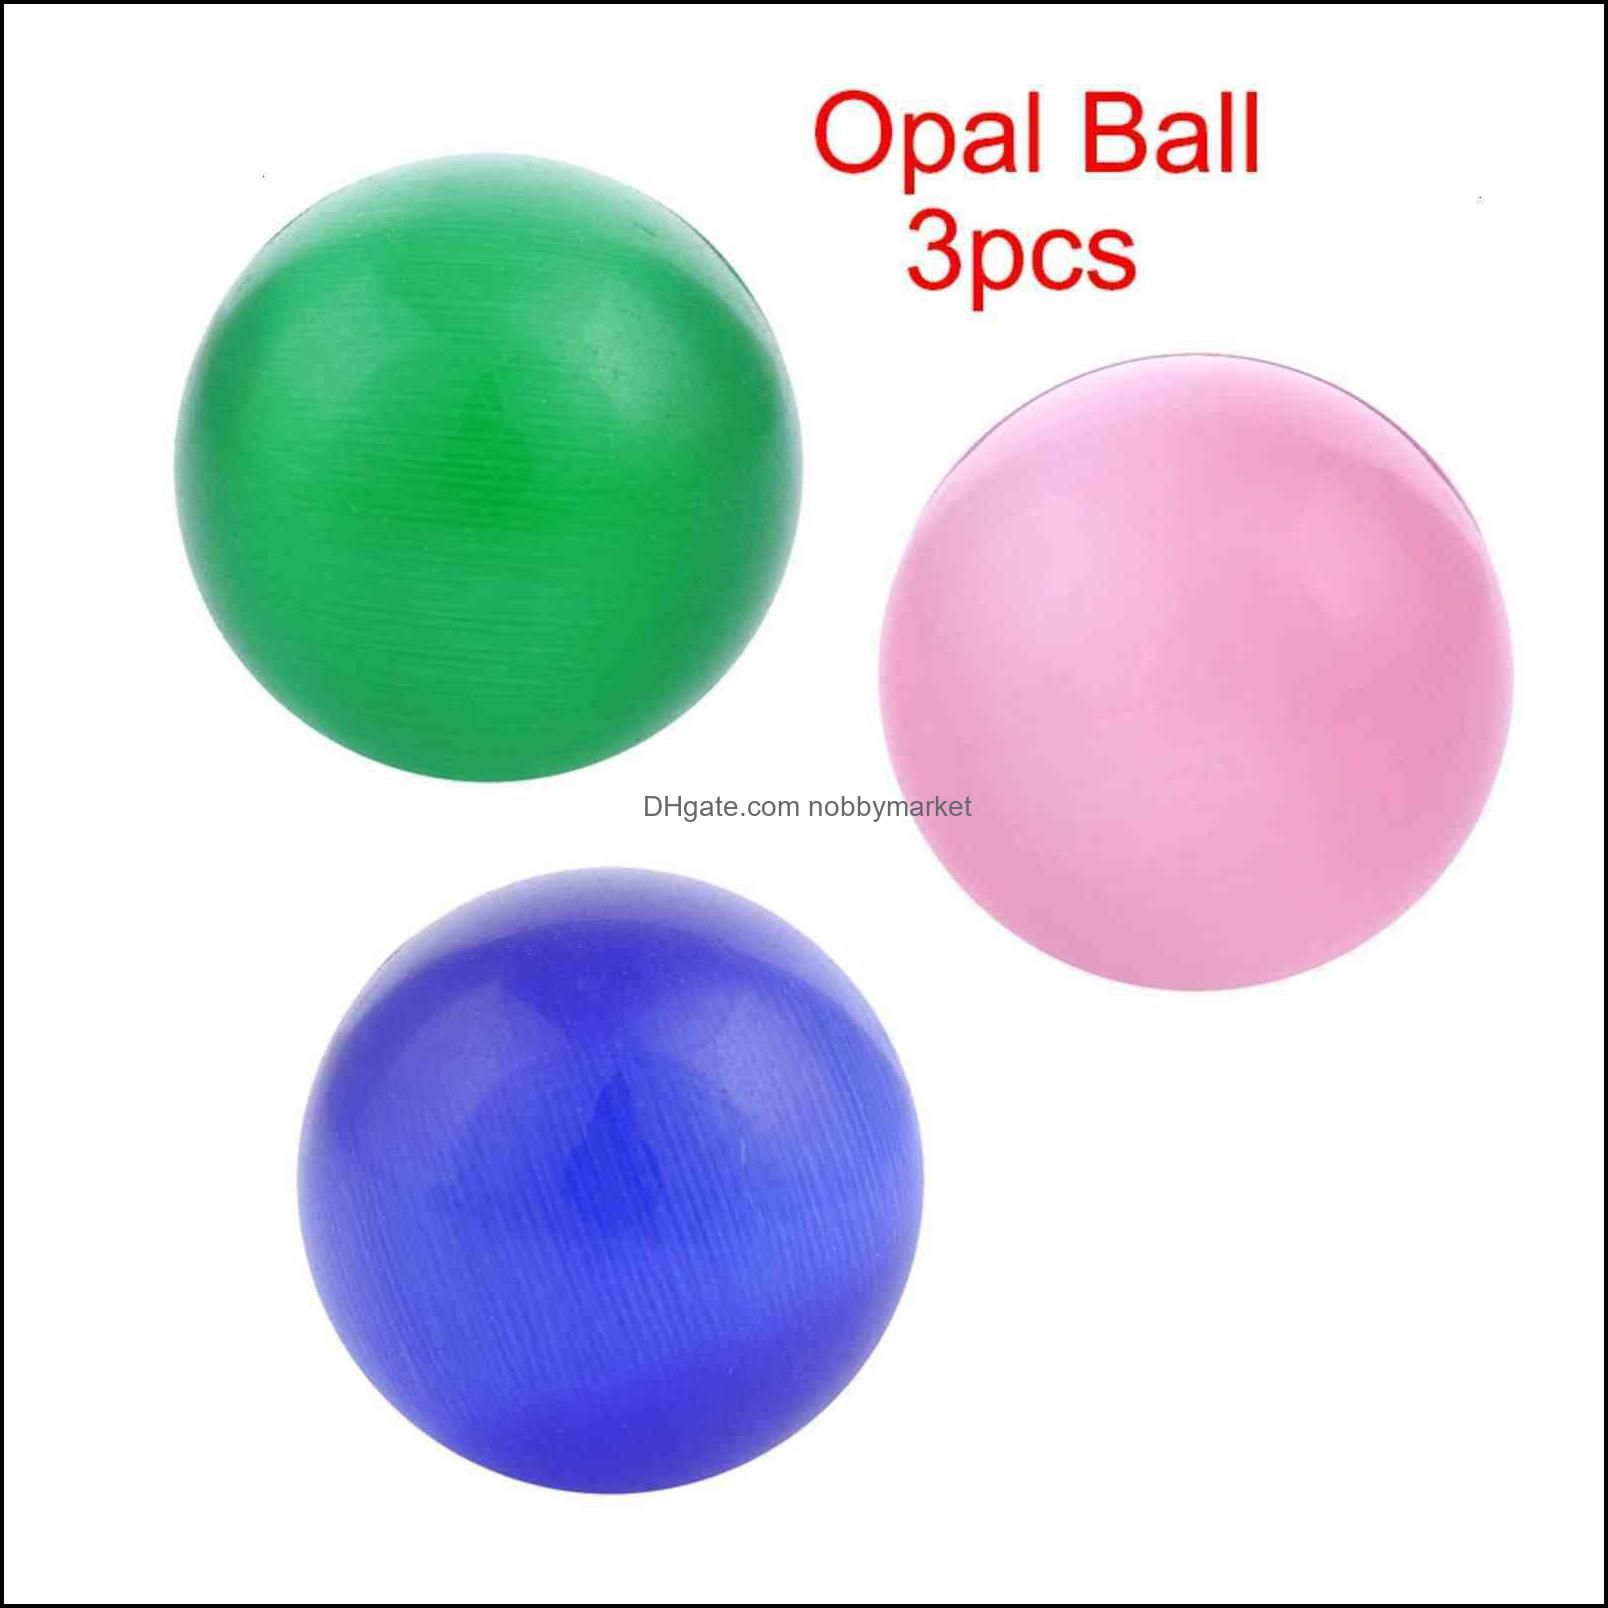 Palla opale 3pcs.